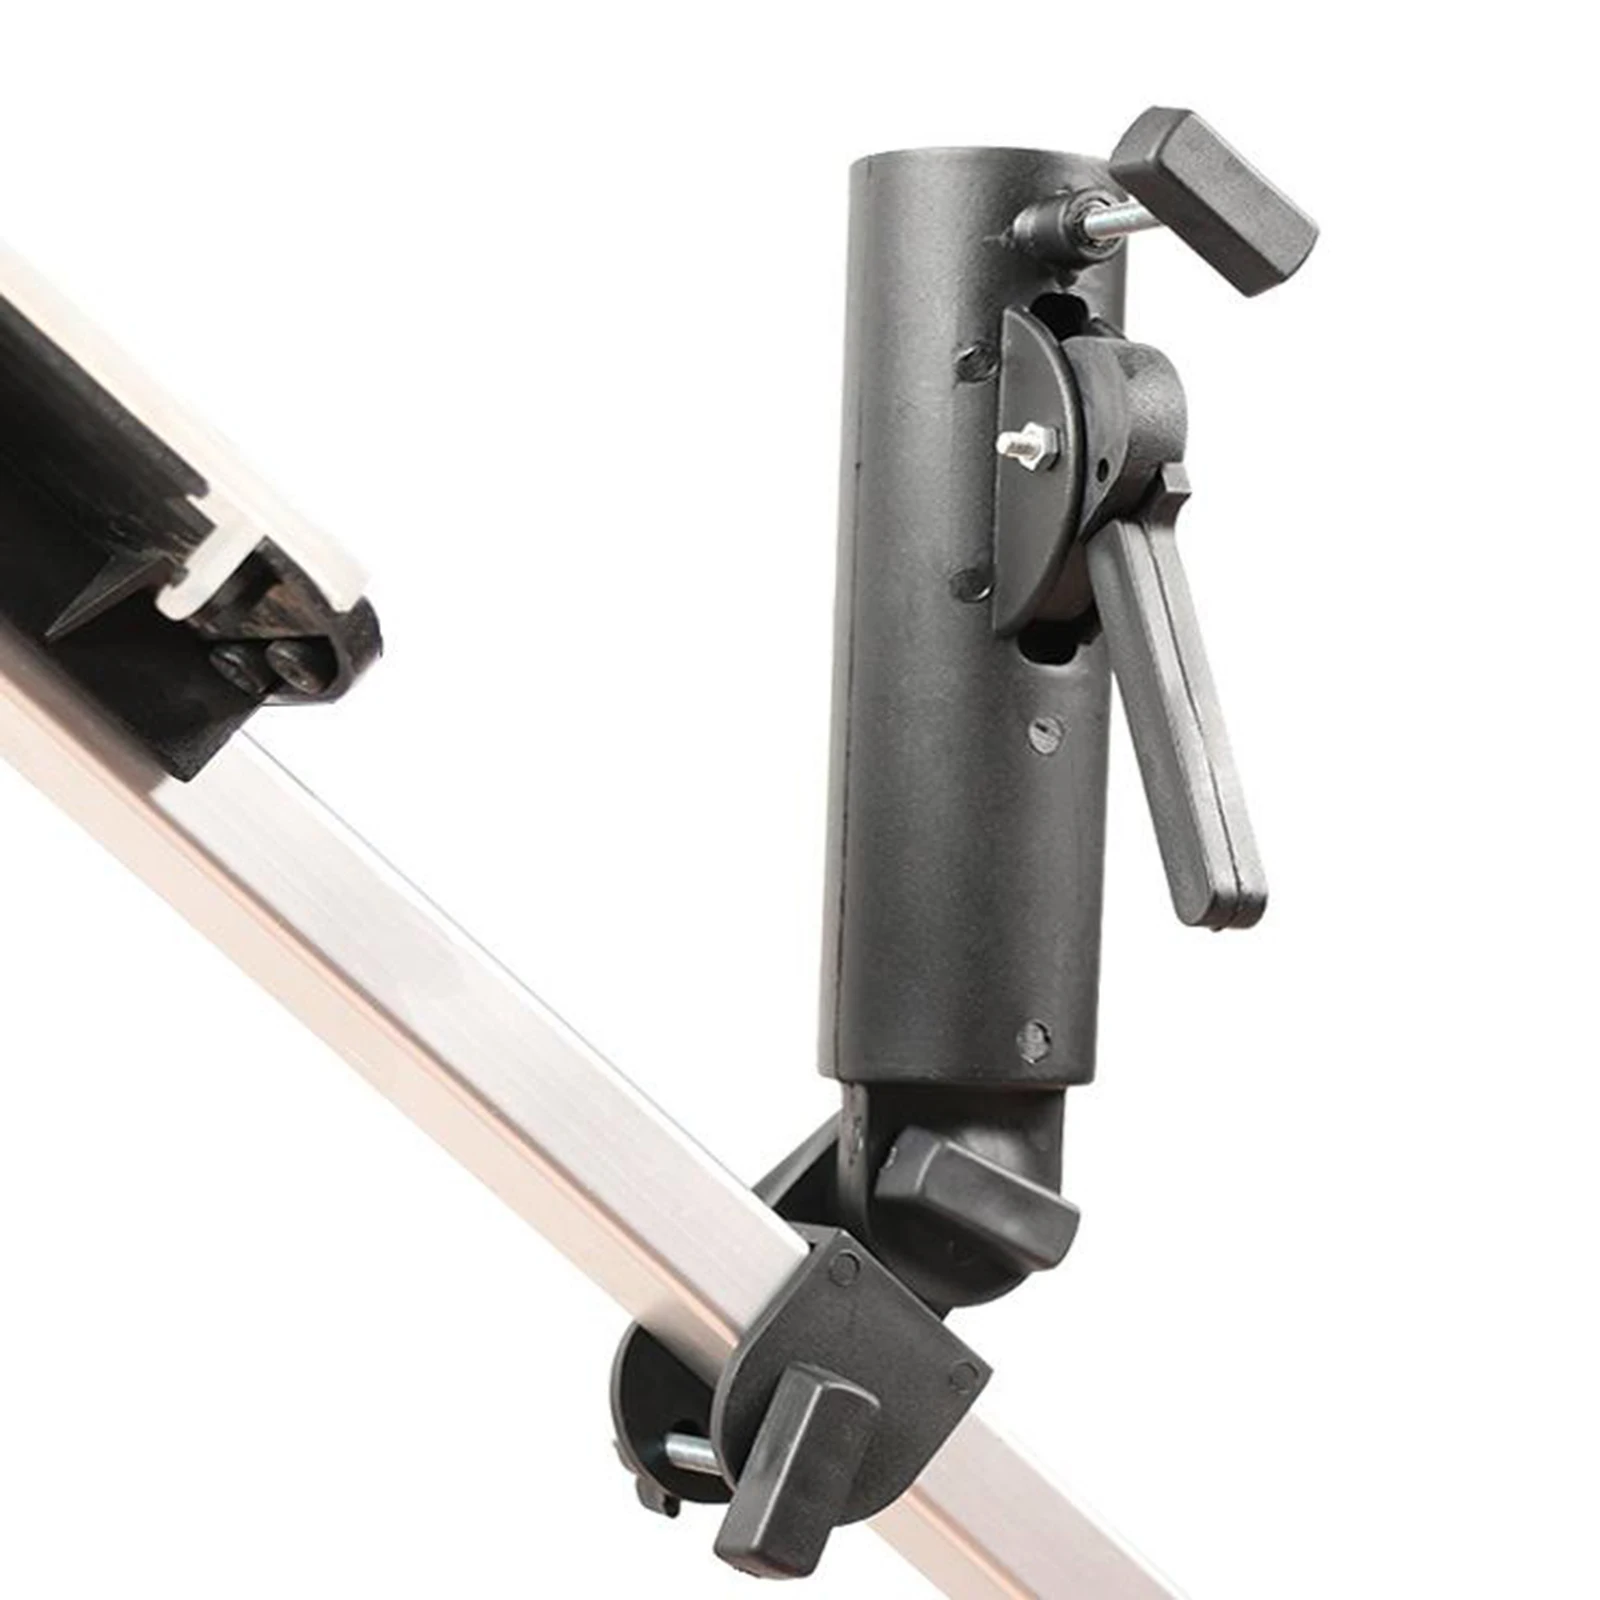 Golf Umbrella Holder Trolley Umbrellas Stand Black Adjustable Size for Golf Cart Handles Bike Stroller